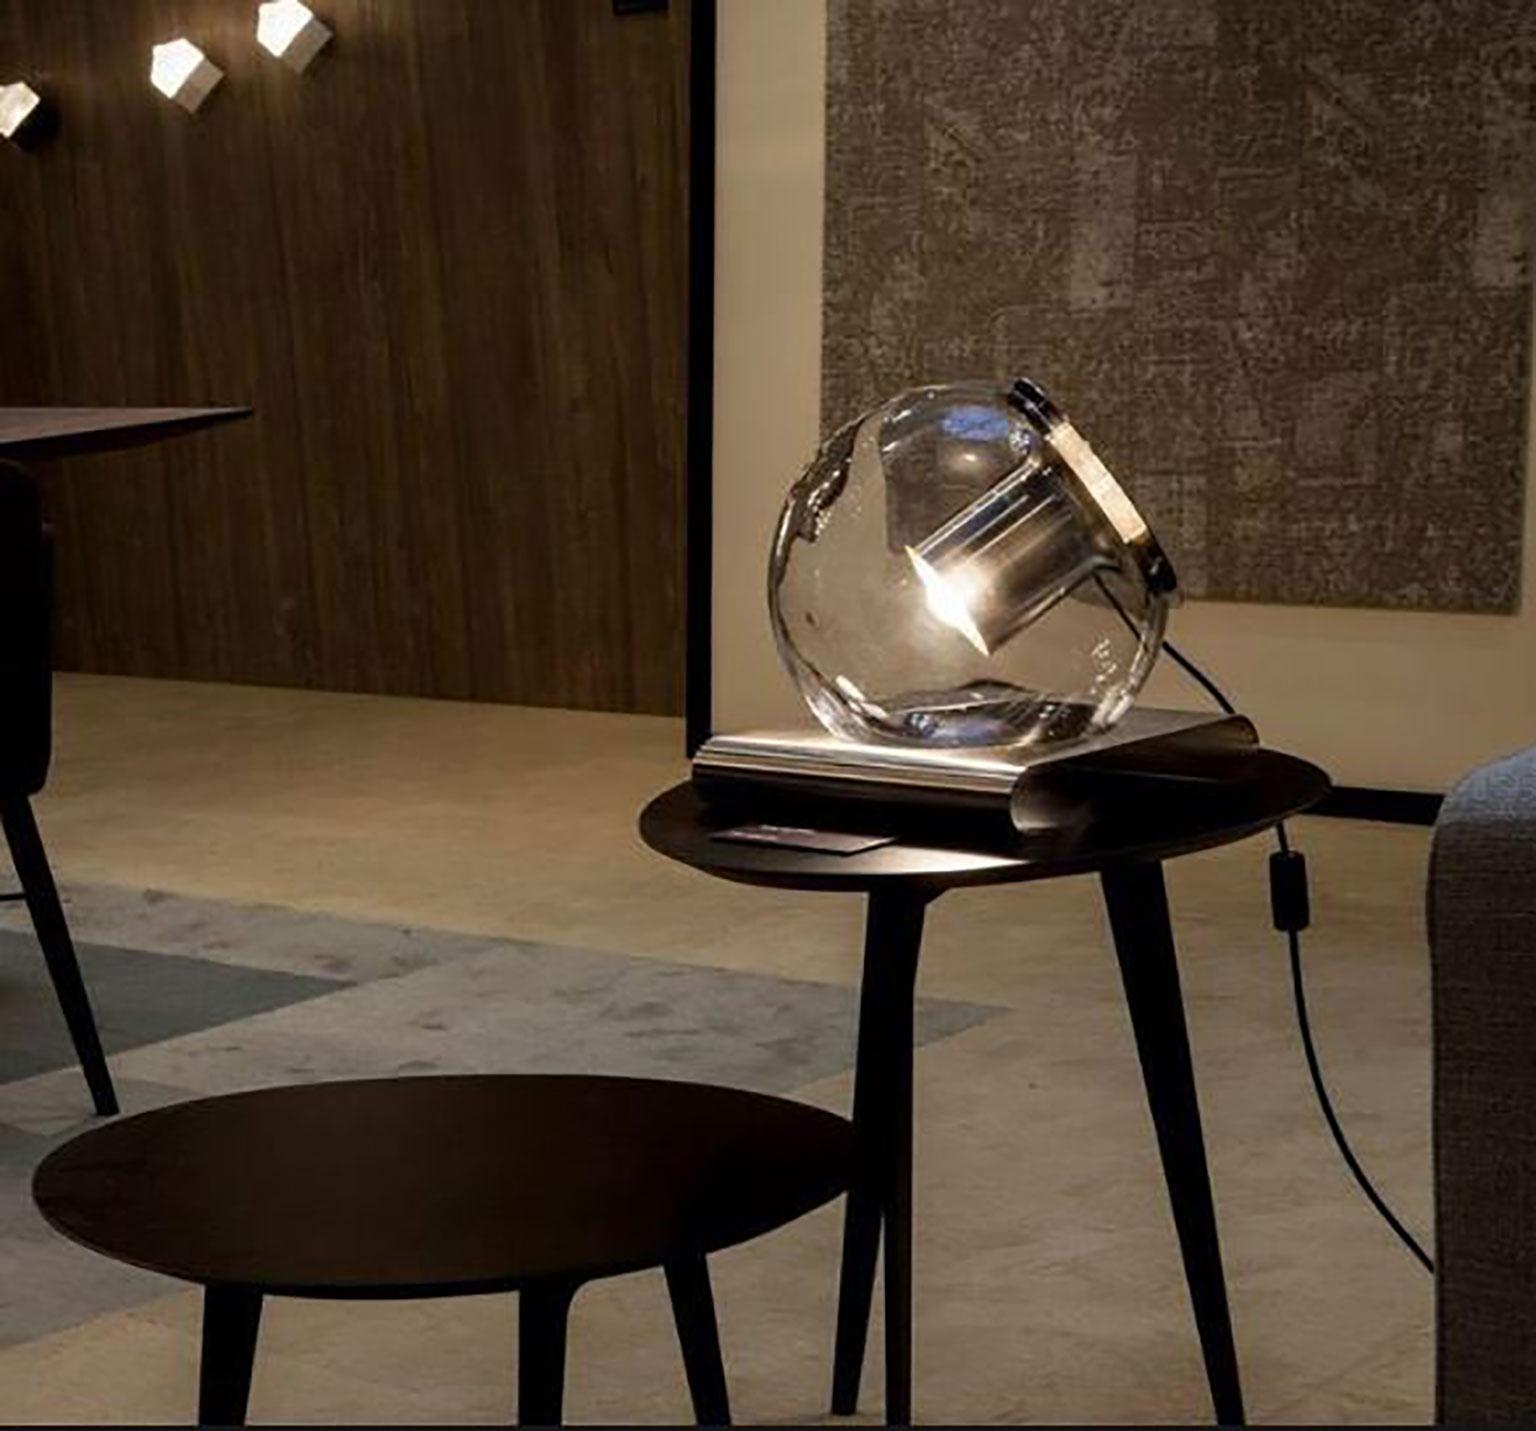 Die Tischleuchte Globe wurde von Joe Colombo für Oluce entworfen. Es handelt sich um ein einfaches und ansprechendes Design aus mundgeblasenem Glas, das mit Hilfe eines internen Metallreflektors ein bemerkenswertes Raumlicht erzeugt. Der gedrehte